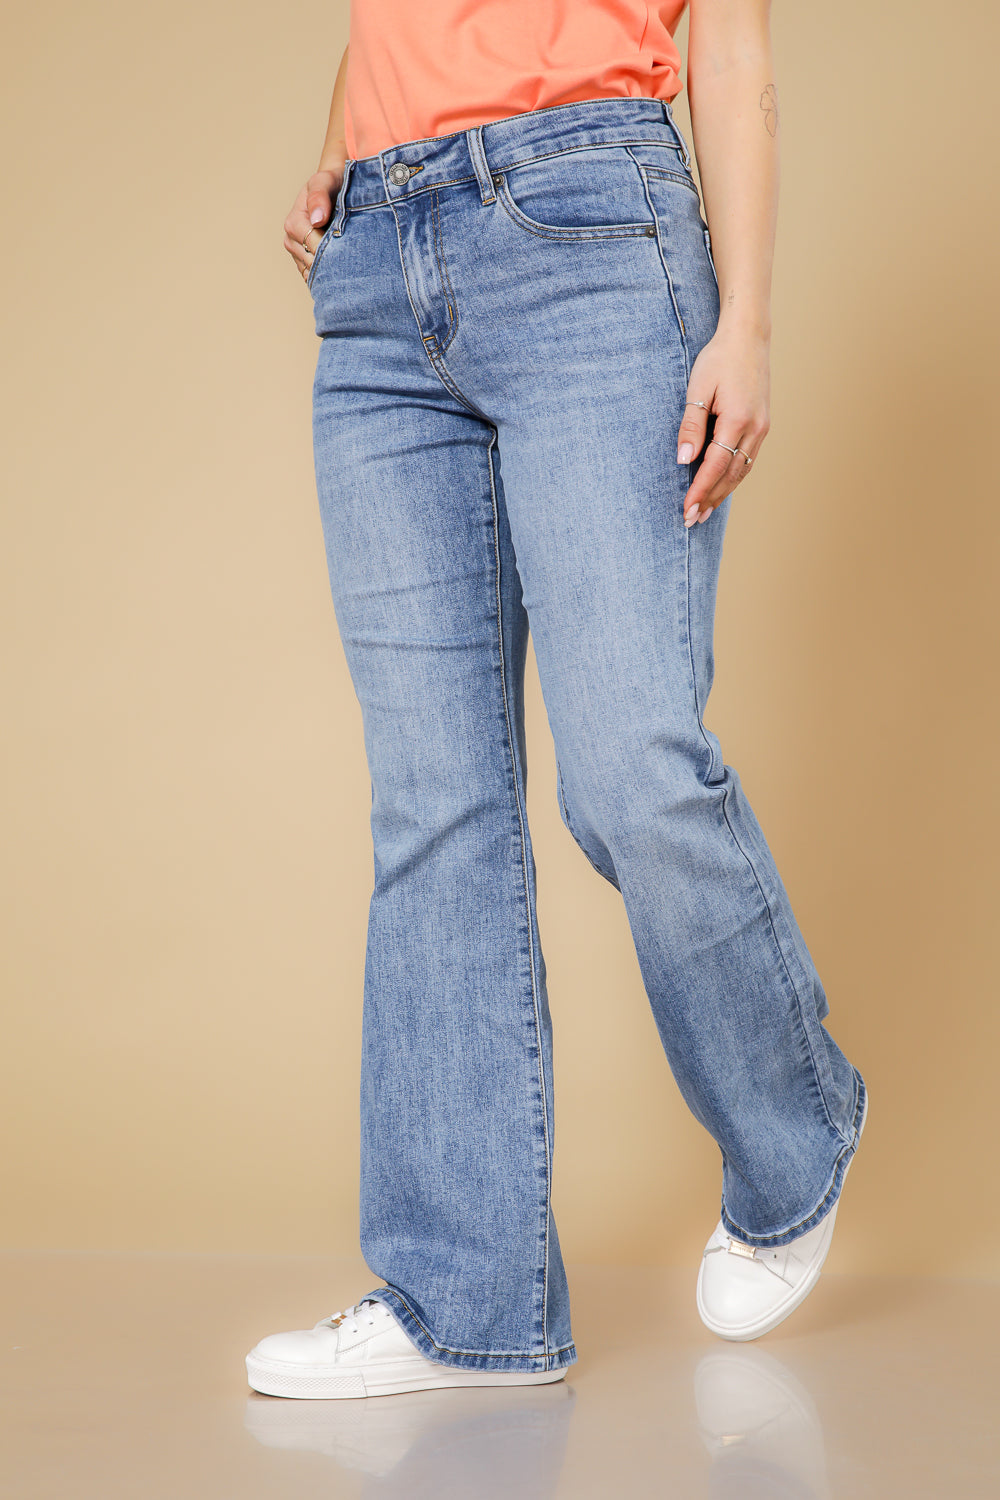 ג'ינס בוטקאט בצבע כחול בהיר